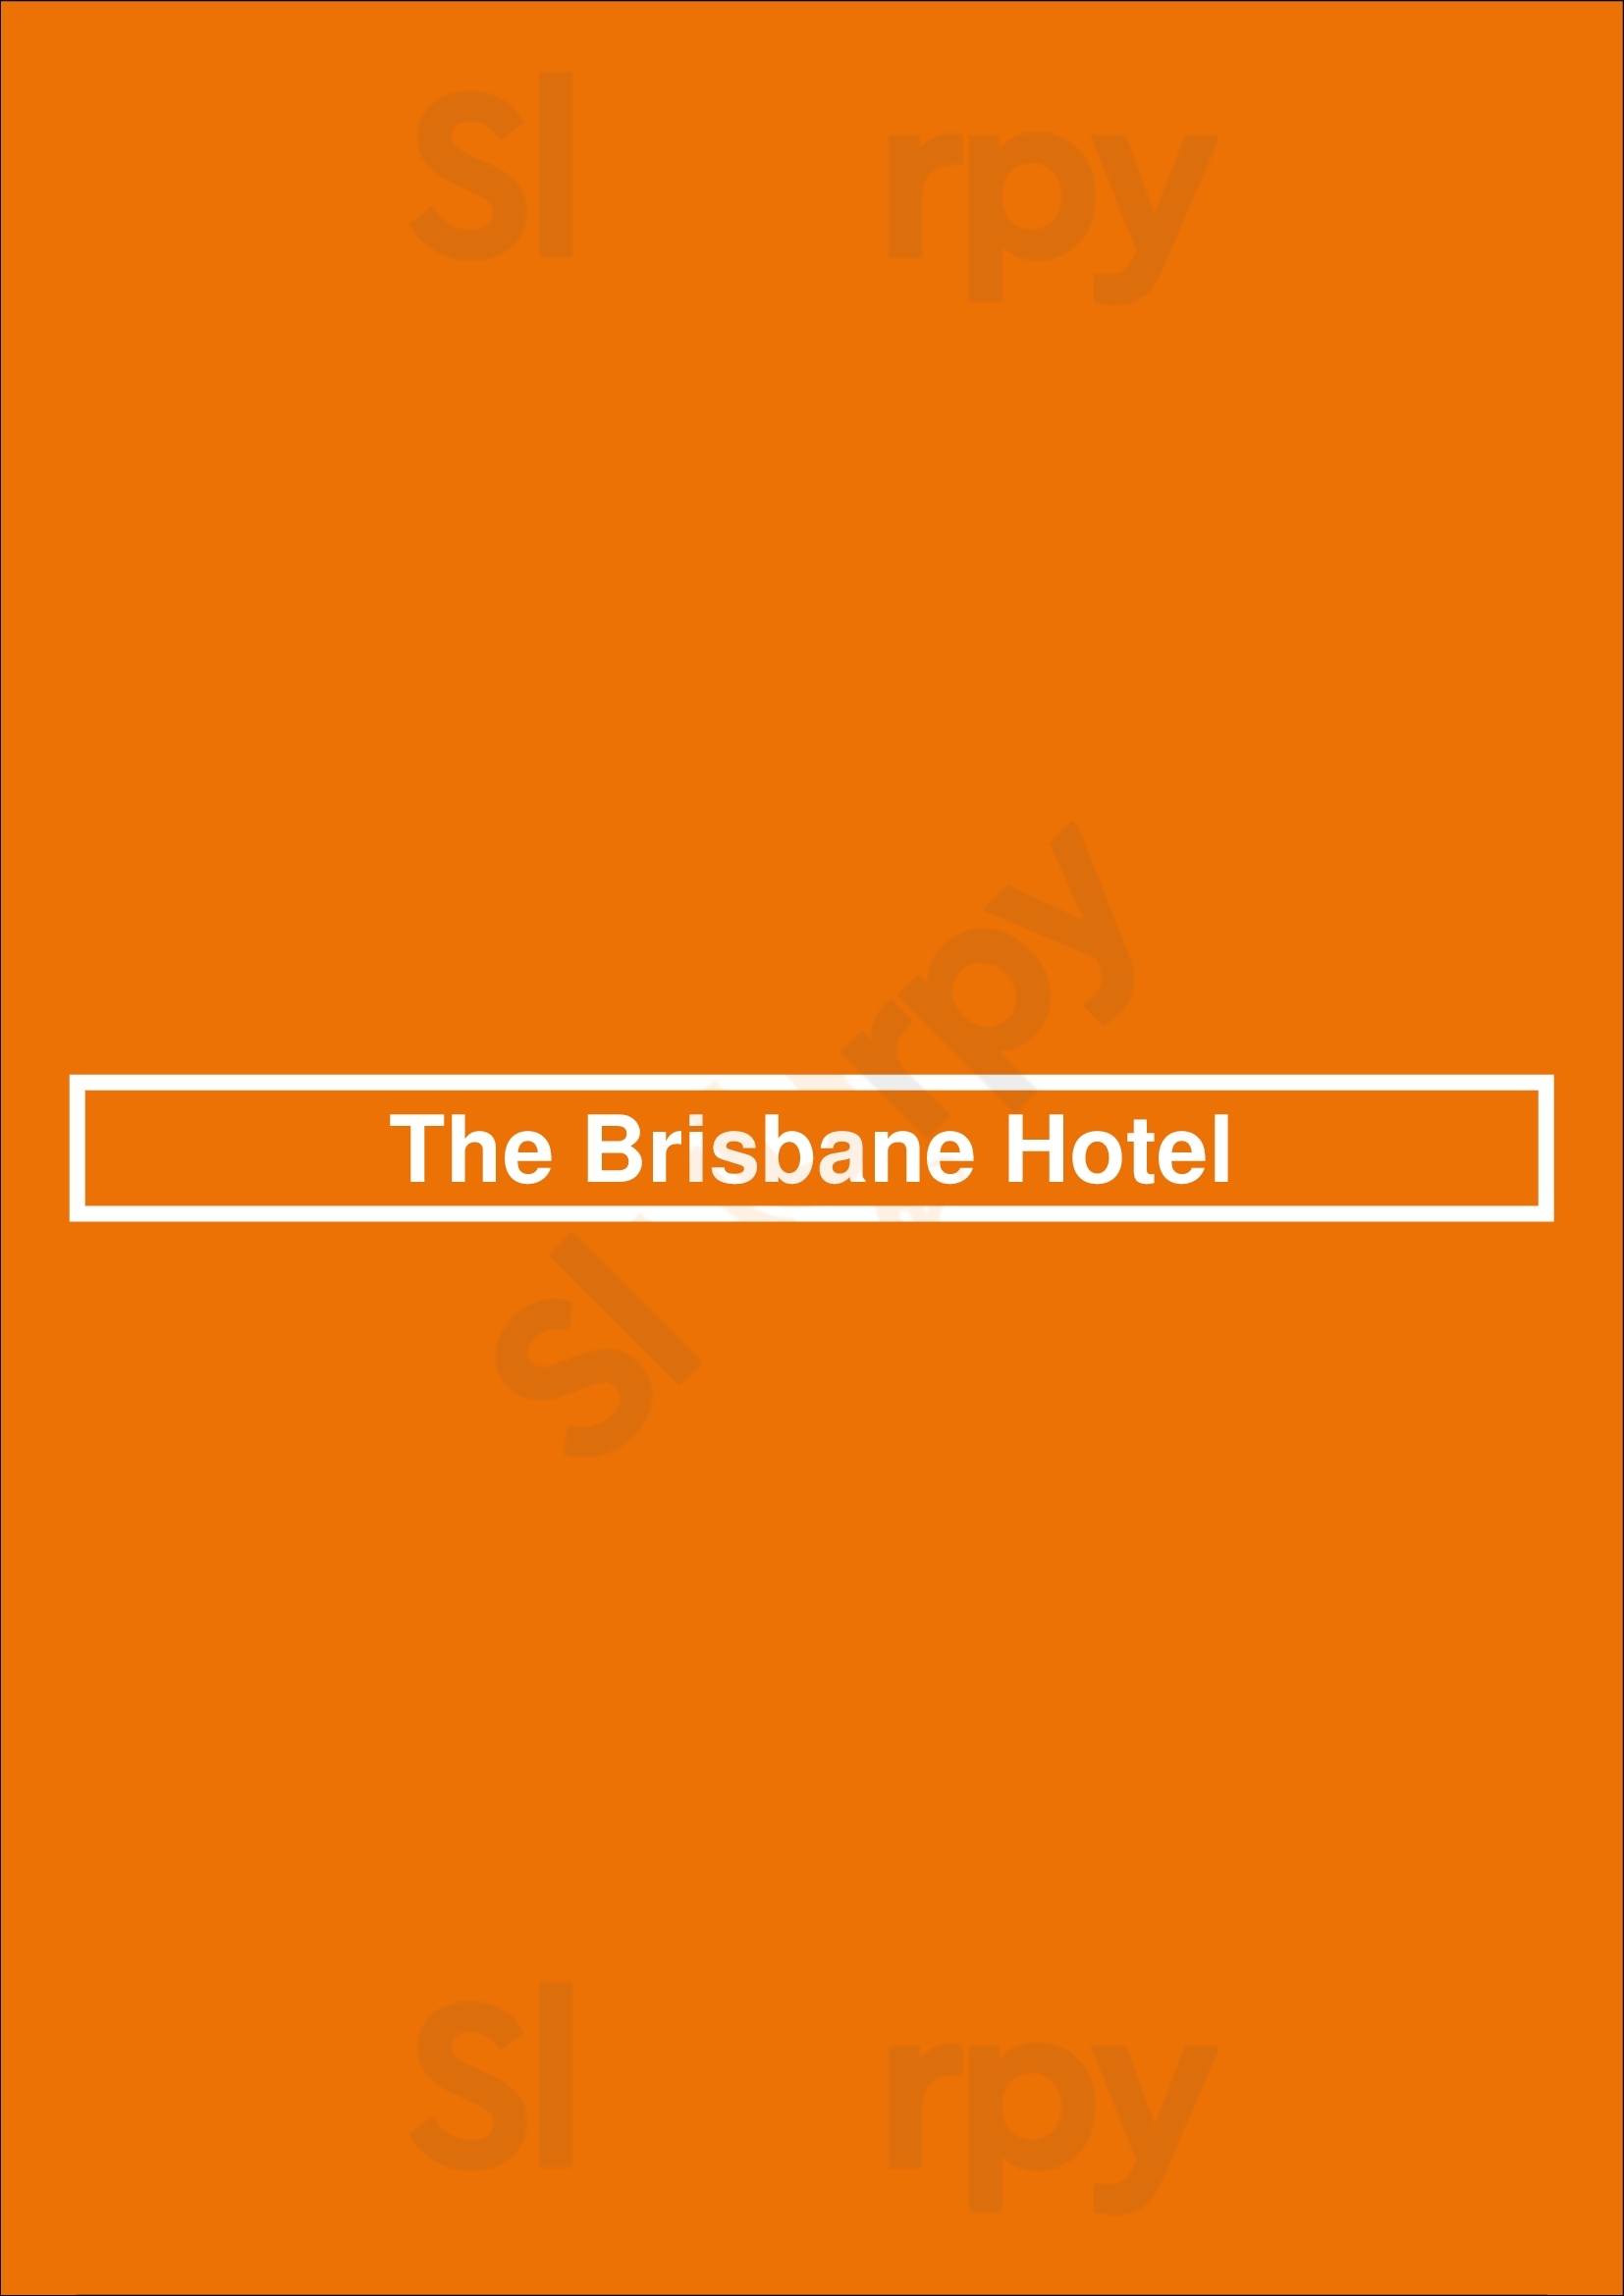 The Brisbane Hotel Highgate Menu - 1